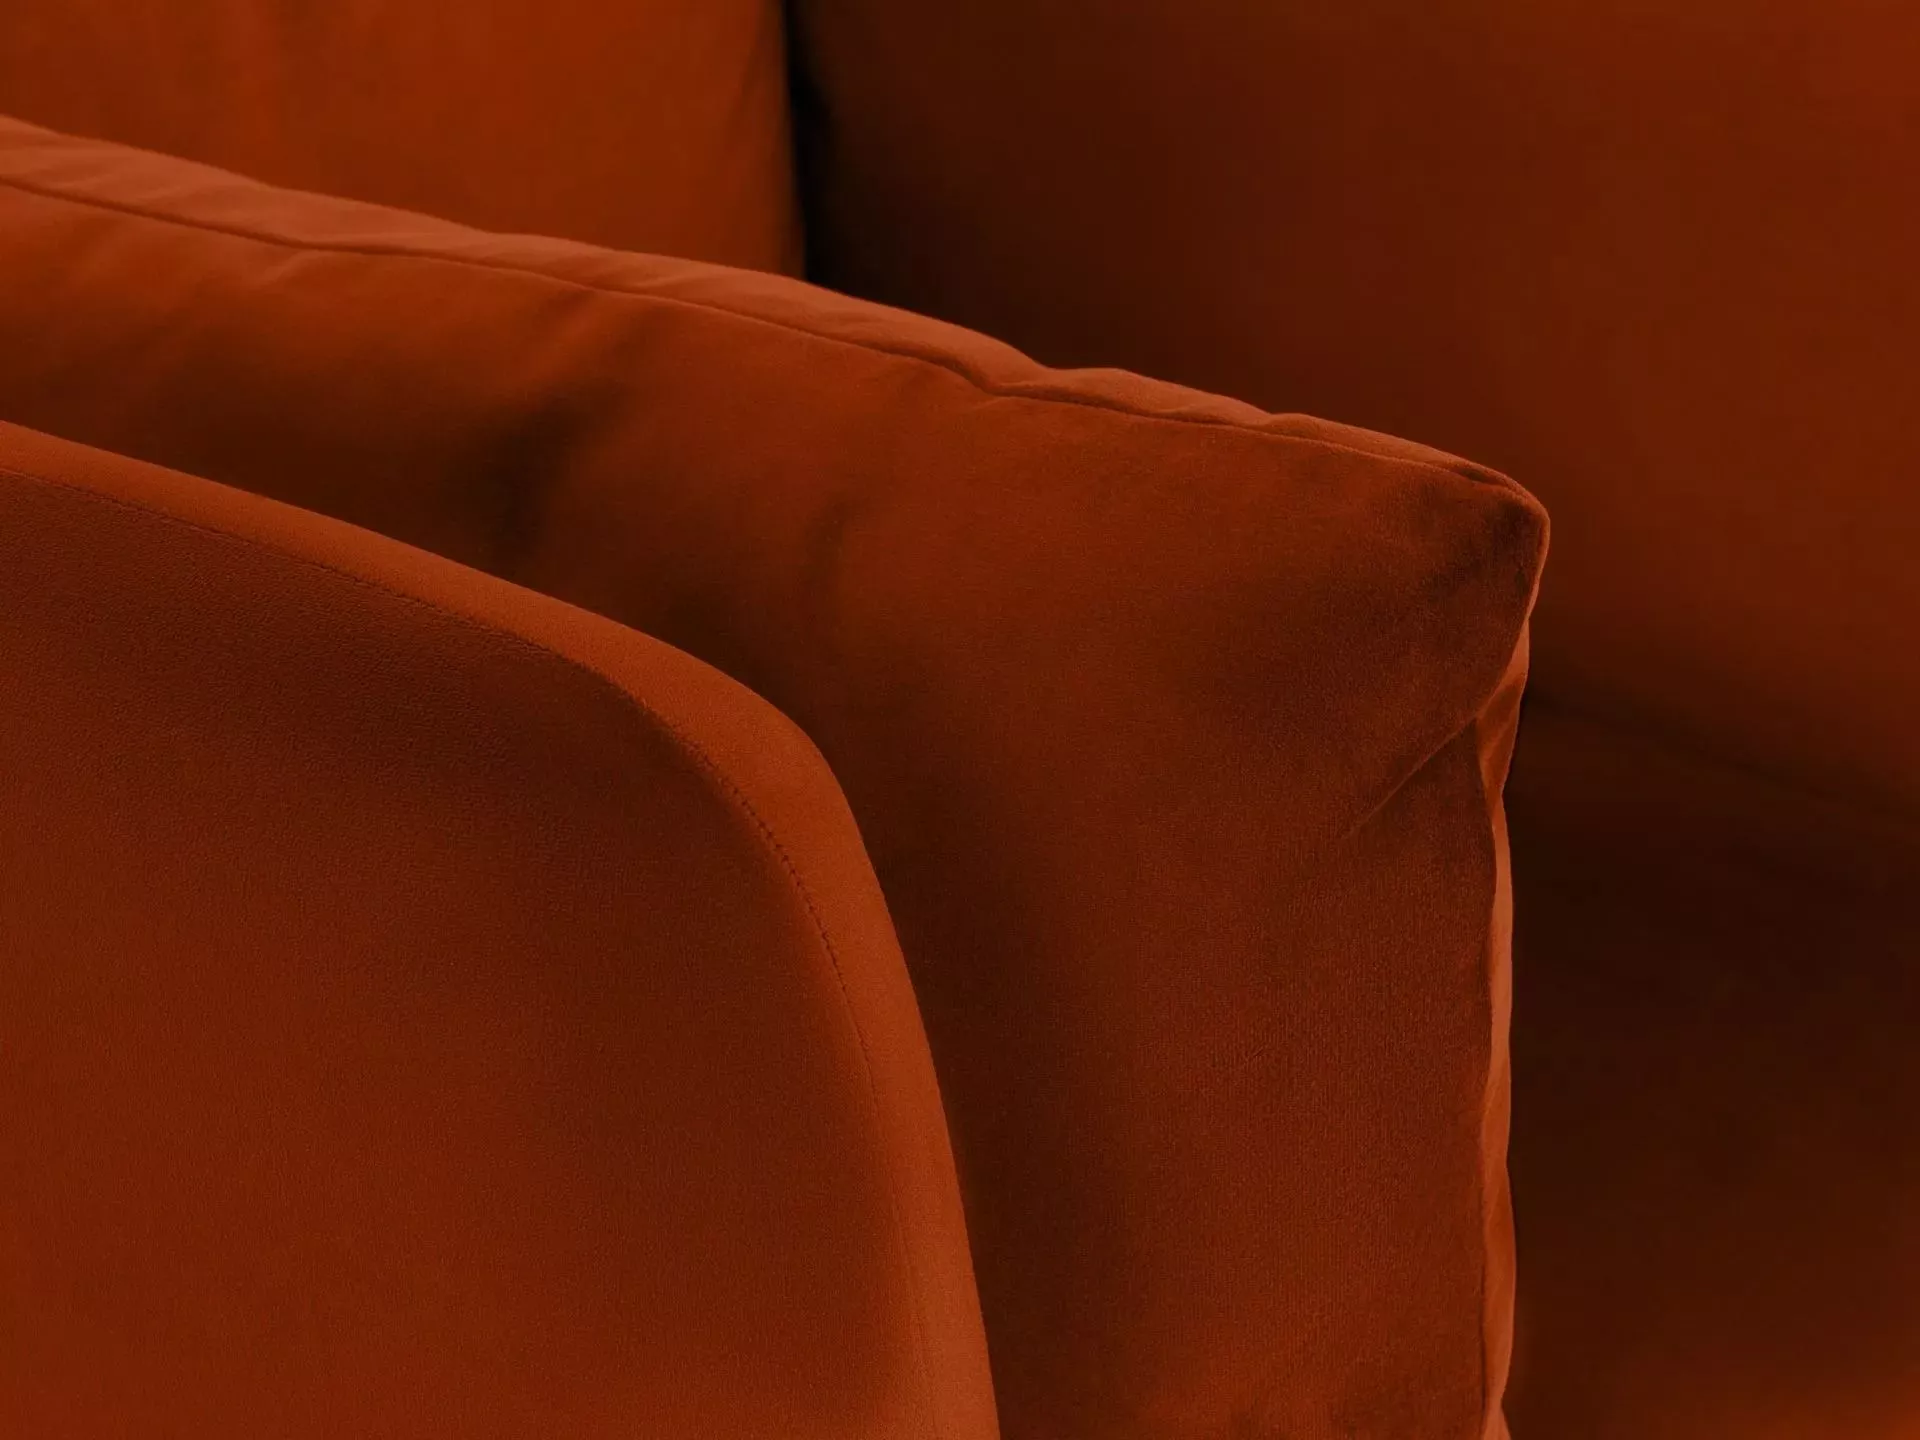 Кресло Copenhagen оранжевый 598977